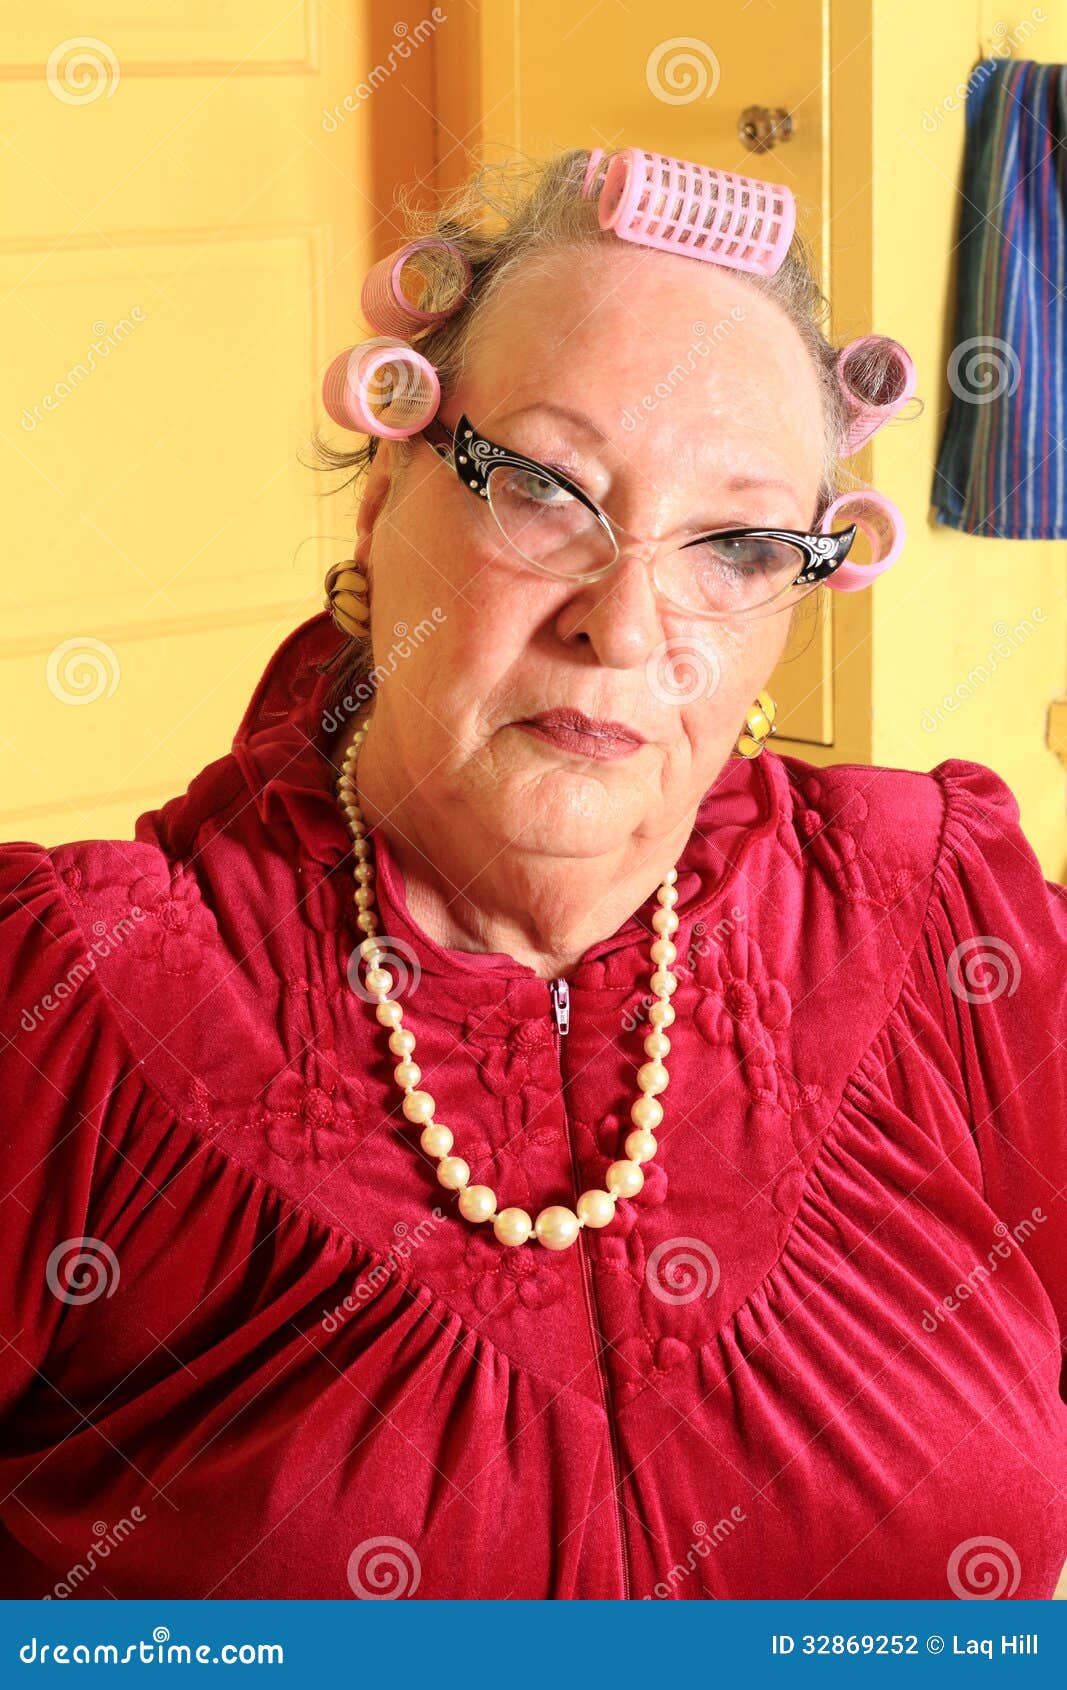 grumpy-senior-granny-curlers-silly-portr